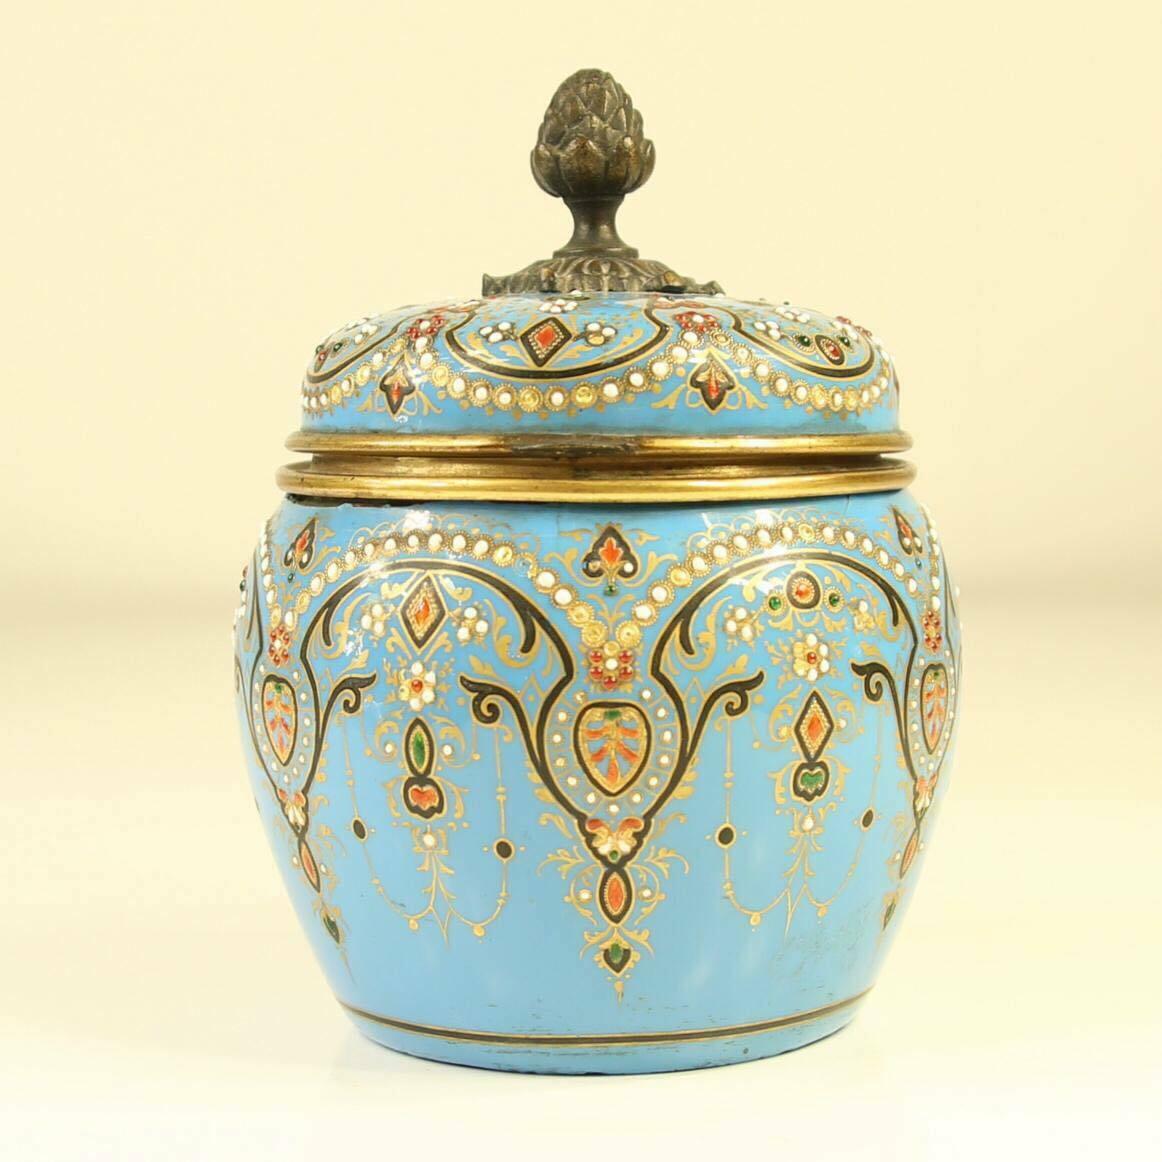 Un superbe pot en émail turquoise bijoutier français du 19ème siècle avec couvercle à charnière contenant 4 bouteilles d'origine en verre avec couvercles ornés.
Très rare et belle pièce en très bon état d'origine, quelques pierres manquantes sur le